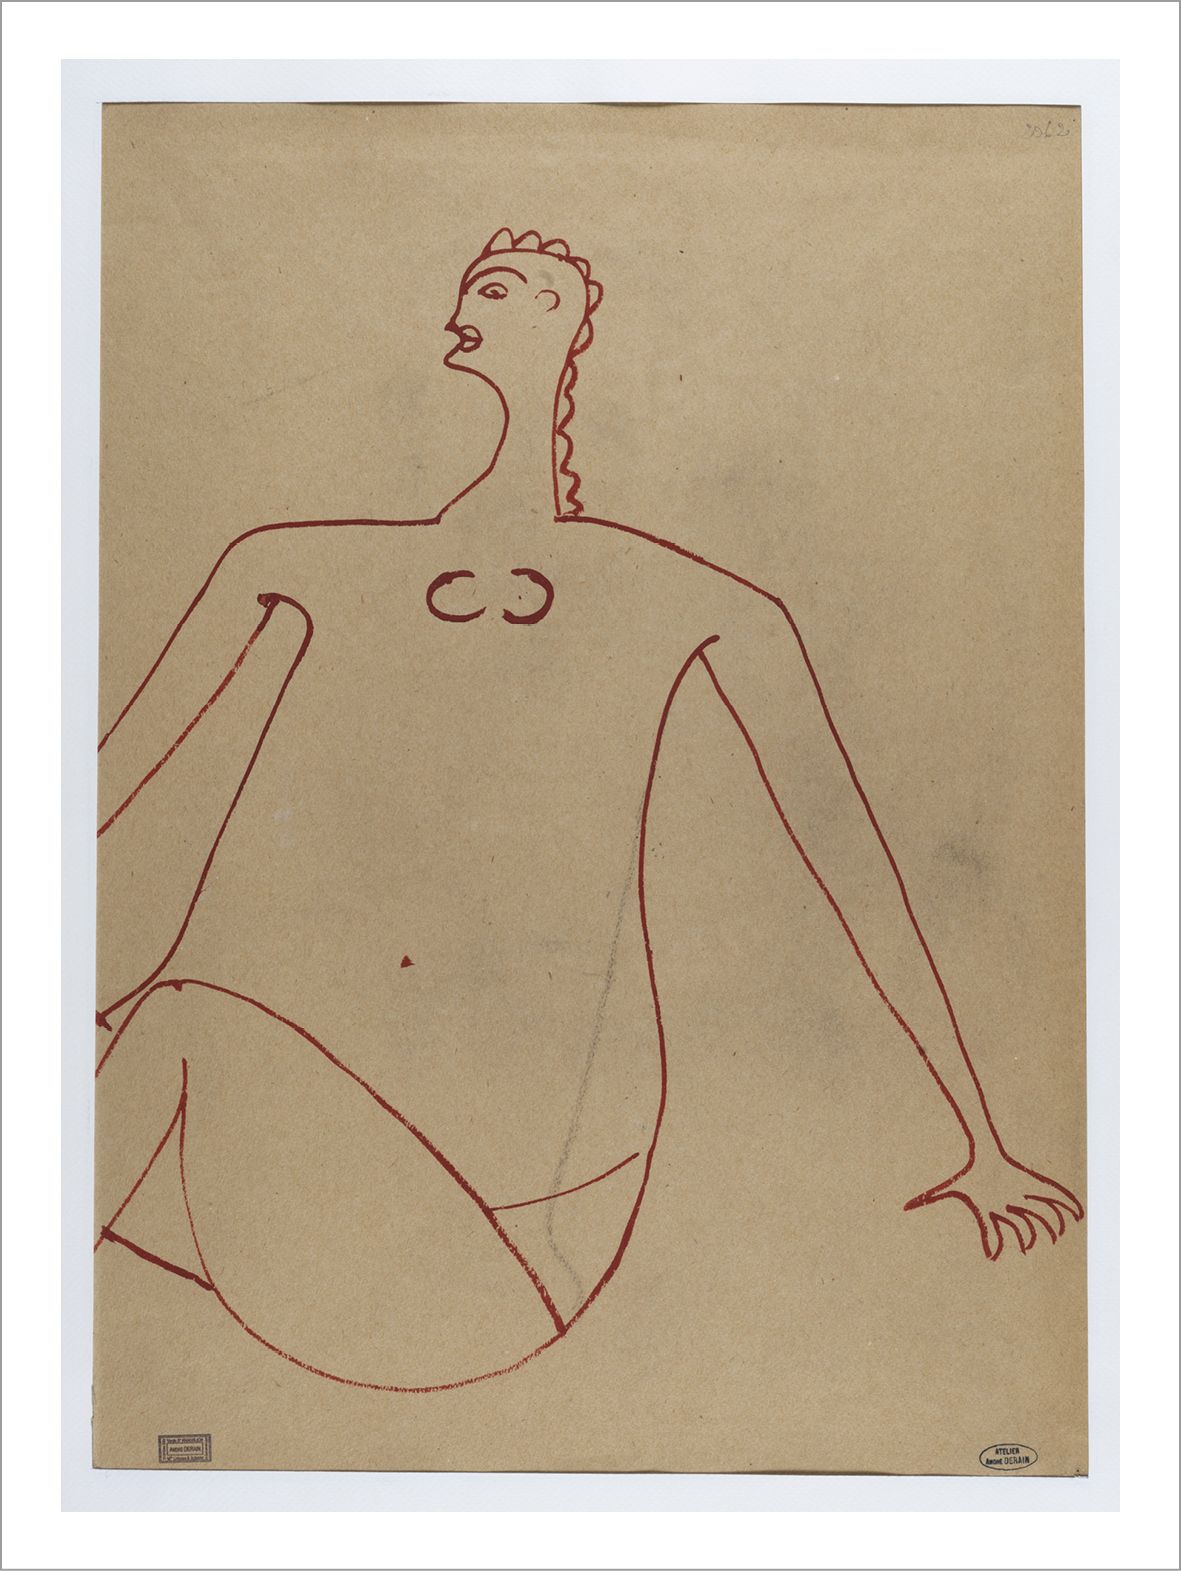 André DERAIN (1880-1954) 字符
纸上水粉画。
艺术家工作室印章右下方。
工作室销售印章左下方。
编号2062右上方。
纸上水粉画。
艺术&hellip;